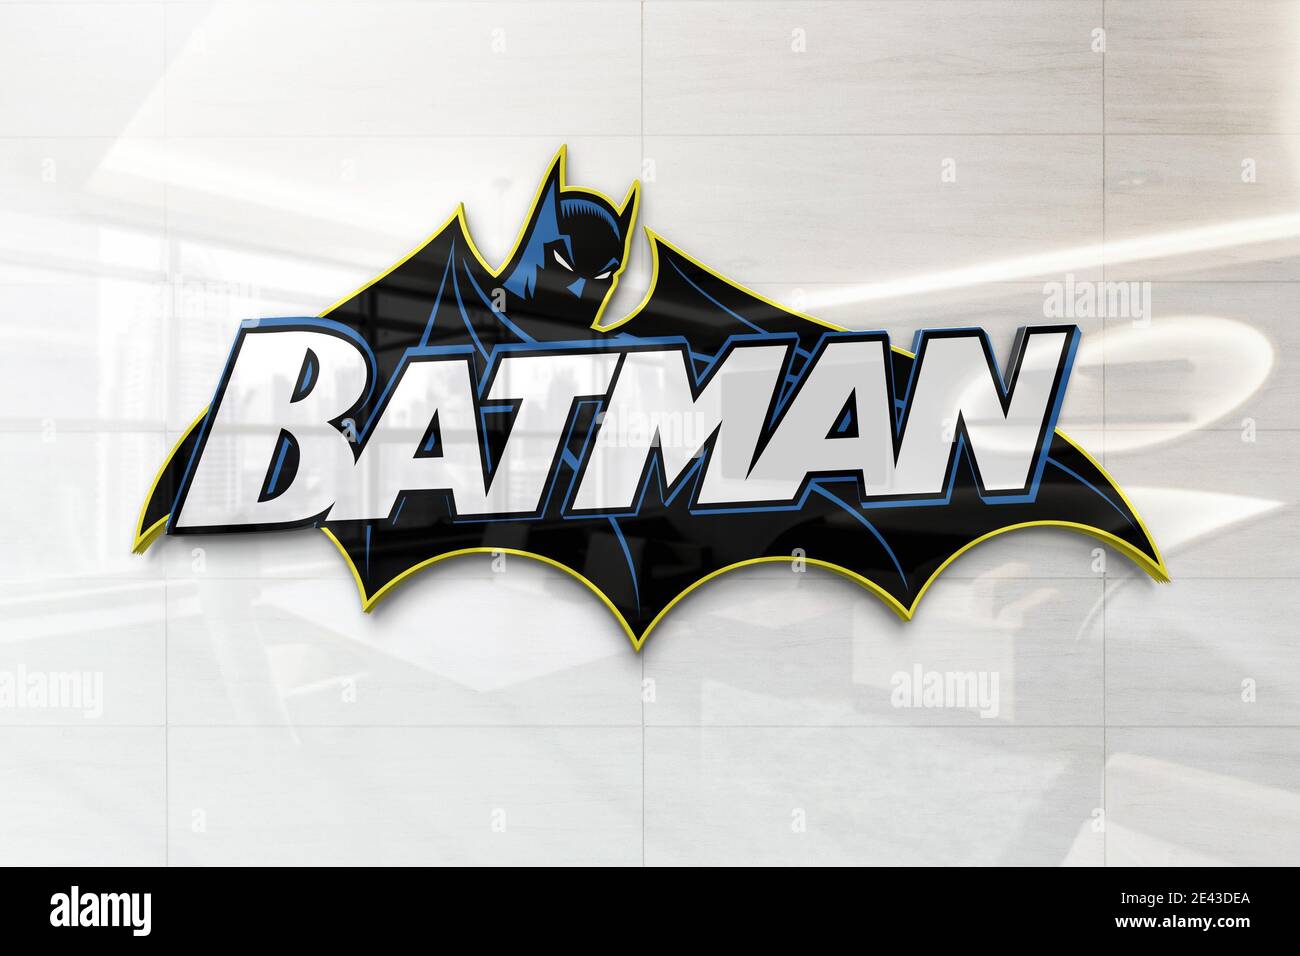 batman logo on glossy wall Stock Photo